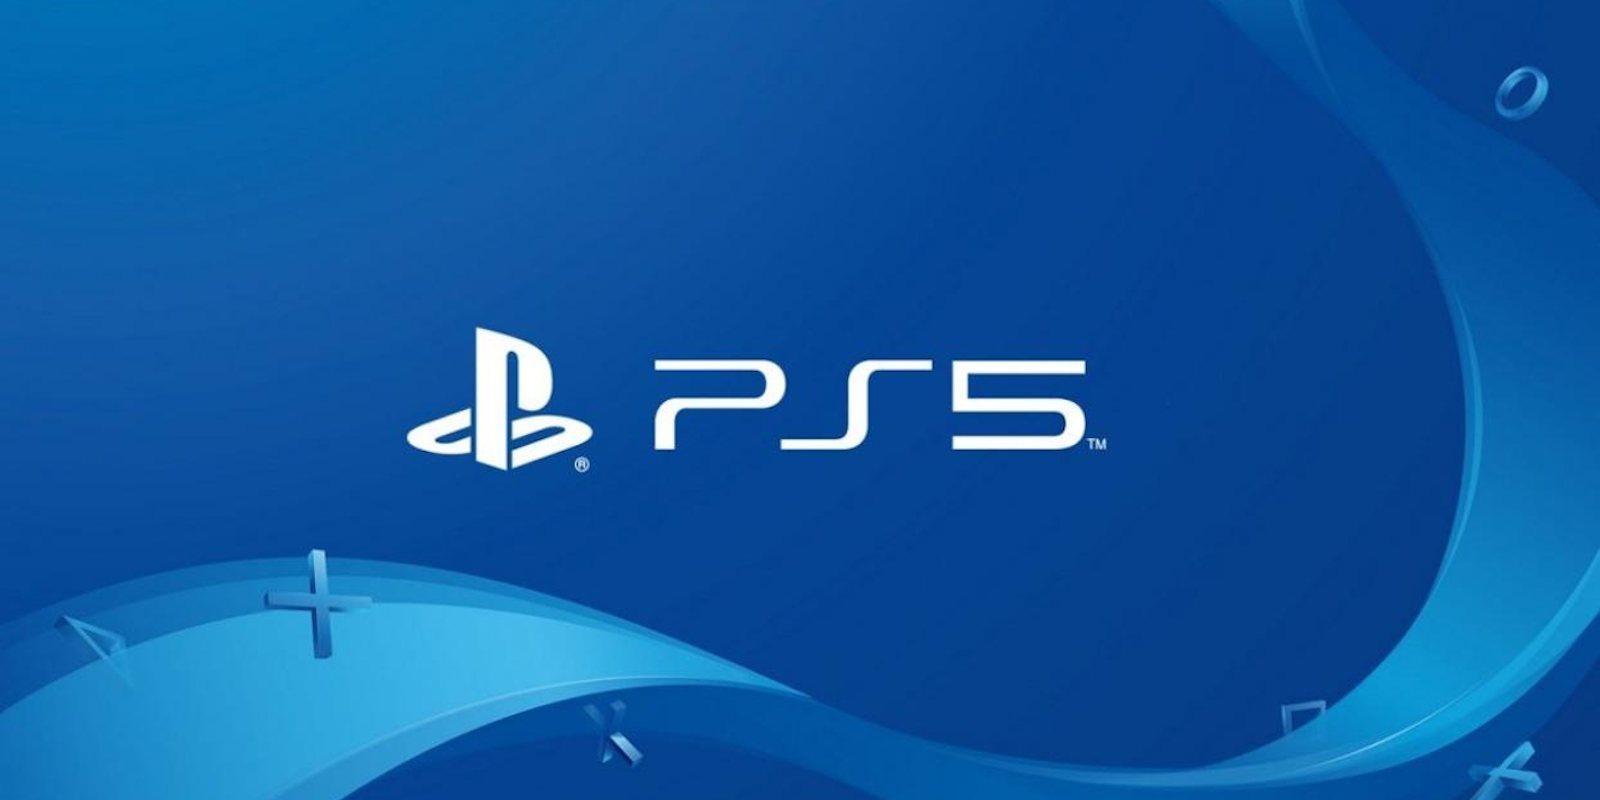 La web oficial de PS5 reitera el lanzamiento para finales de este año 2020